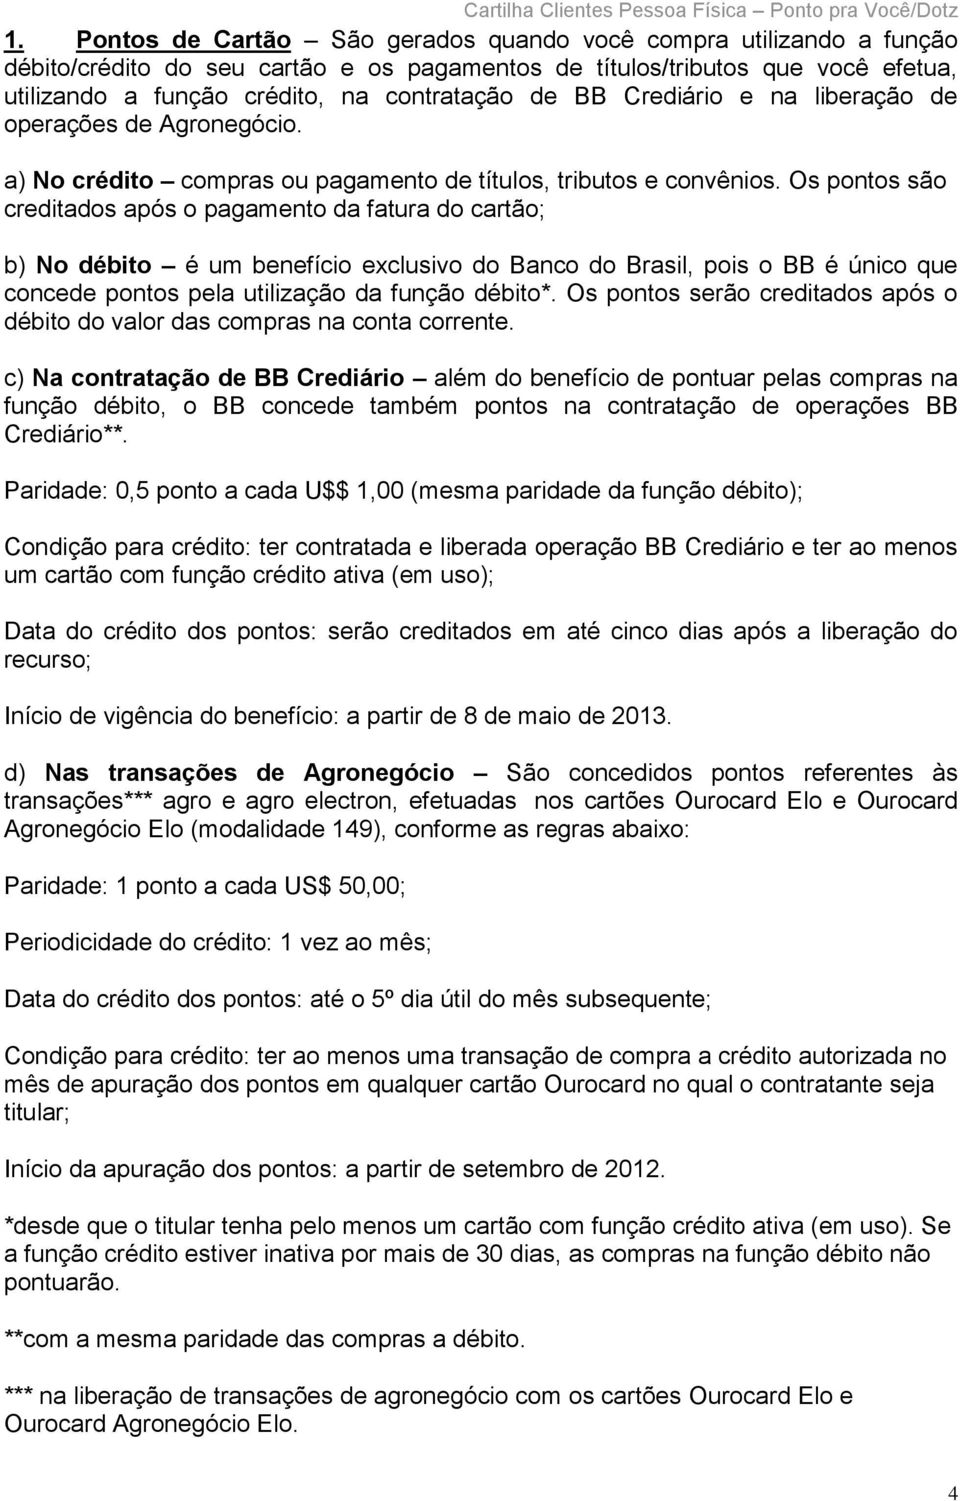 Os pontos são creditados após o pagamento da fatura do cartão; b) No débito é um benefício exclusivo do Banco do Brasil, pois o BB é único que concede pontos pela utilização da função débito*.